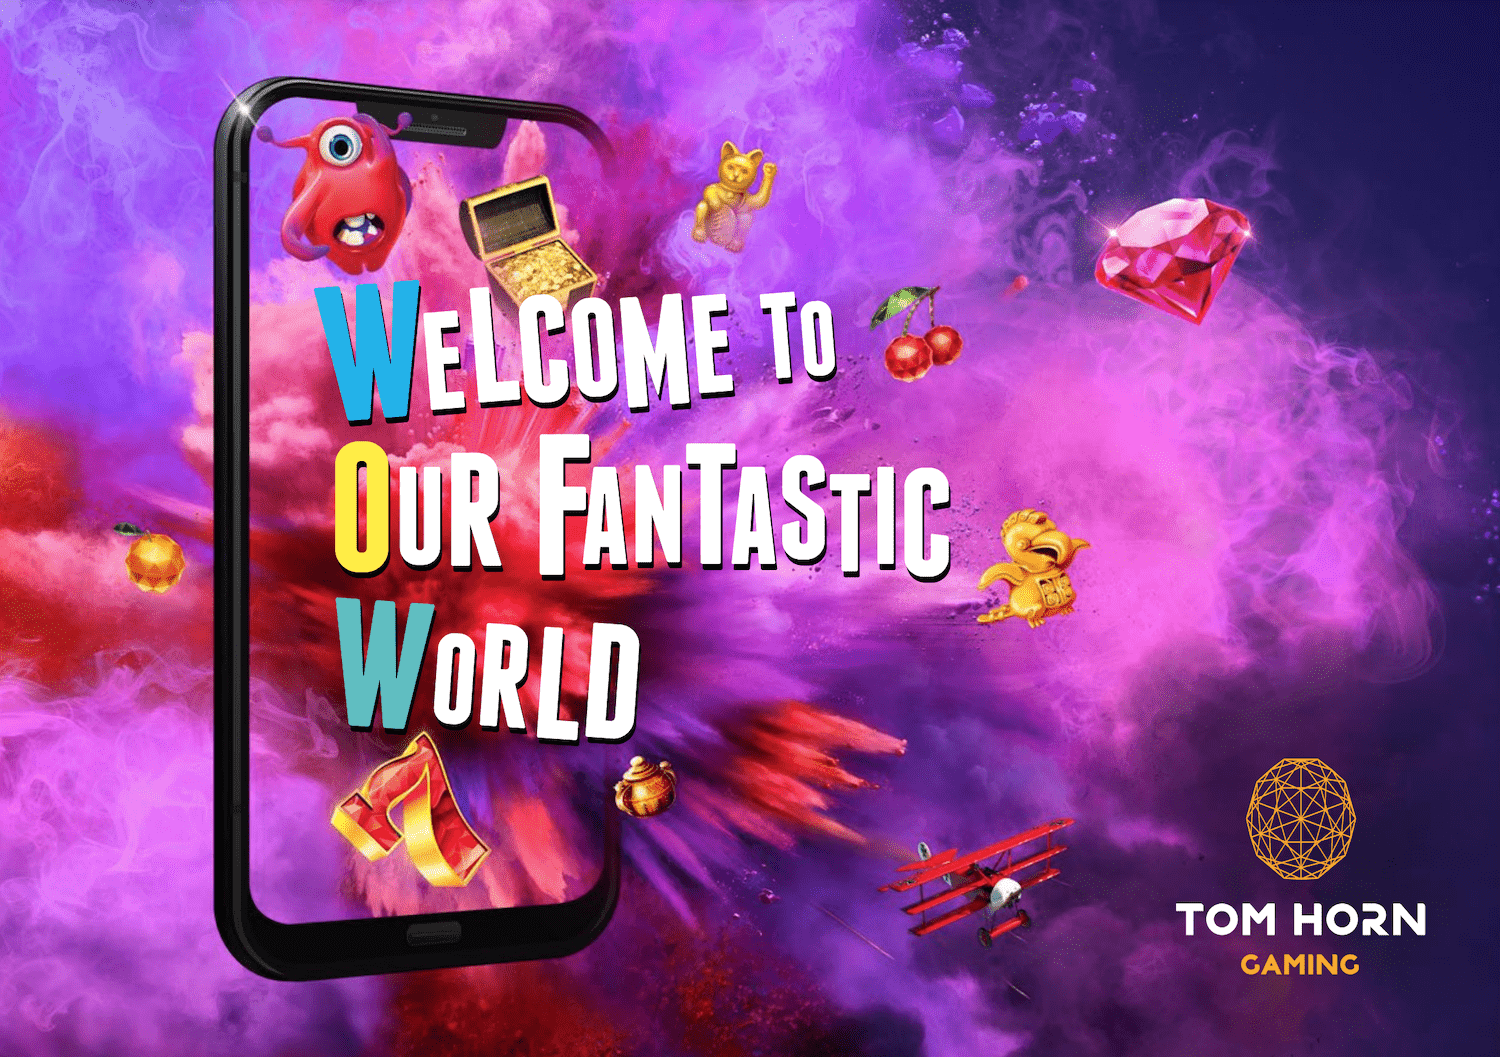 Vitajte v našom fantastickom svete - Tom Horn Gaming